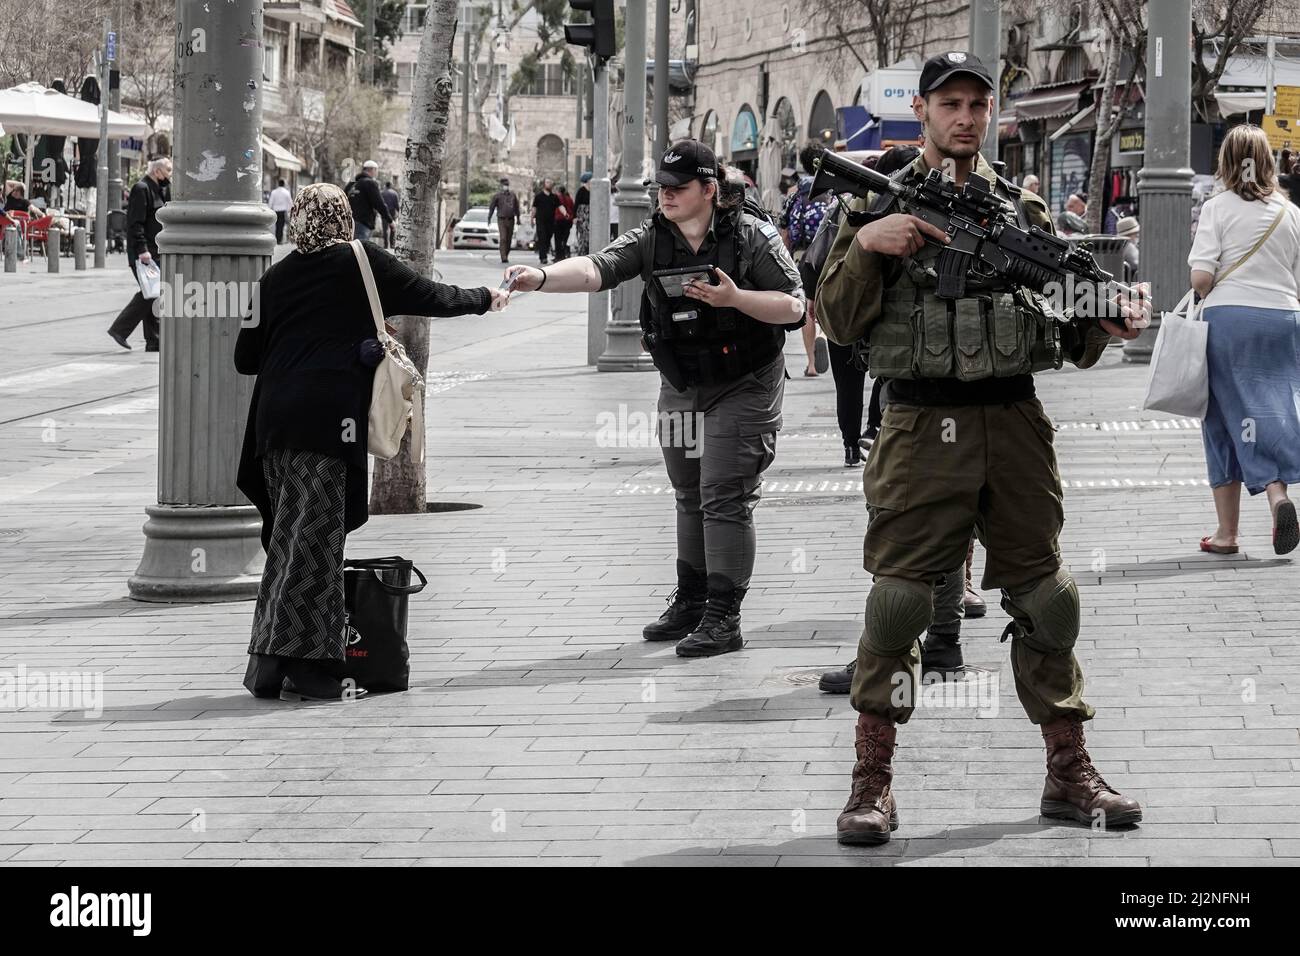 Jerusalén, Israel. 3rd de Abr de 2022. Los soldados de las FDI patrullan las calles del mercado de Shuk Mahane Yehuda, reforzando a la policía israelí en zonas urbanas abarrotadas durante el mes musulmán de Ramadán. En apenas las últimas dos semanas, un aumento repentino de los ataques terroristas árabes en ciudades israelíes y en Cisjordania ha herido a 20 y se ha cobrado la vida de 11, elevando las medidas de seguridad en lo que las FDI titulaban Operación Breaker de Ondas. Crédito: NIR Alon/Alamy Live News Foto de stock